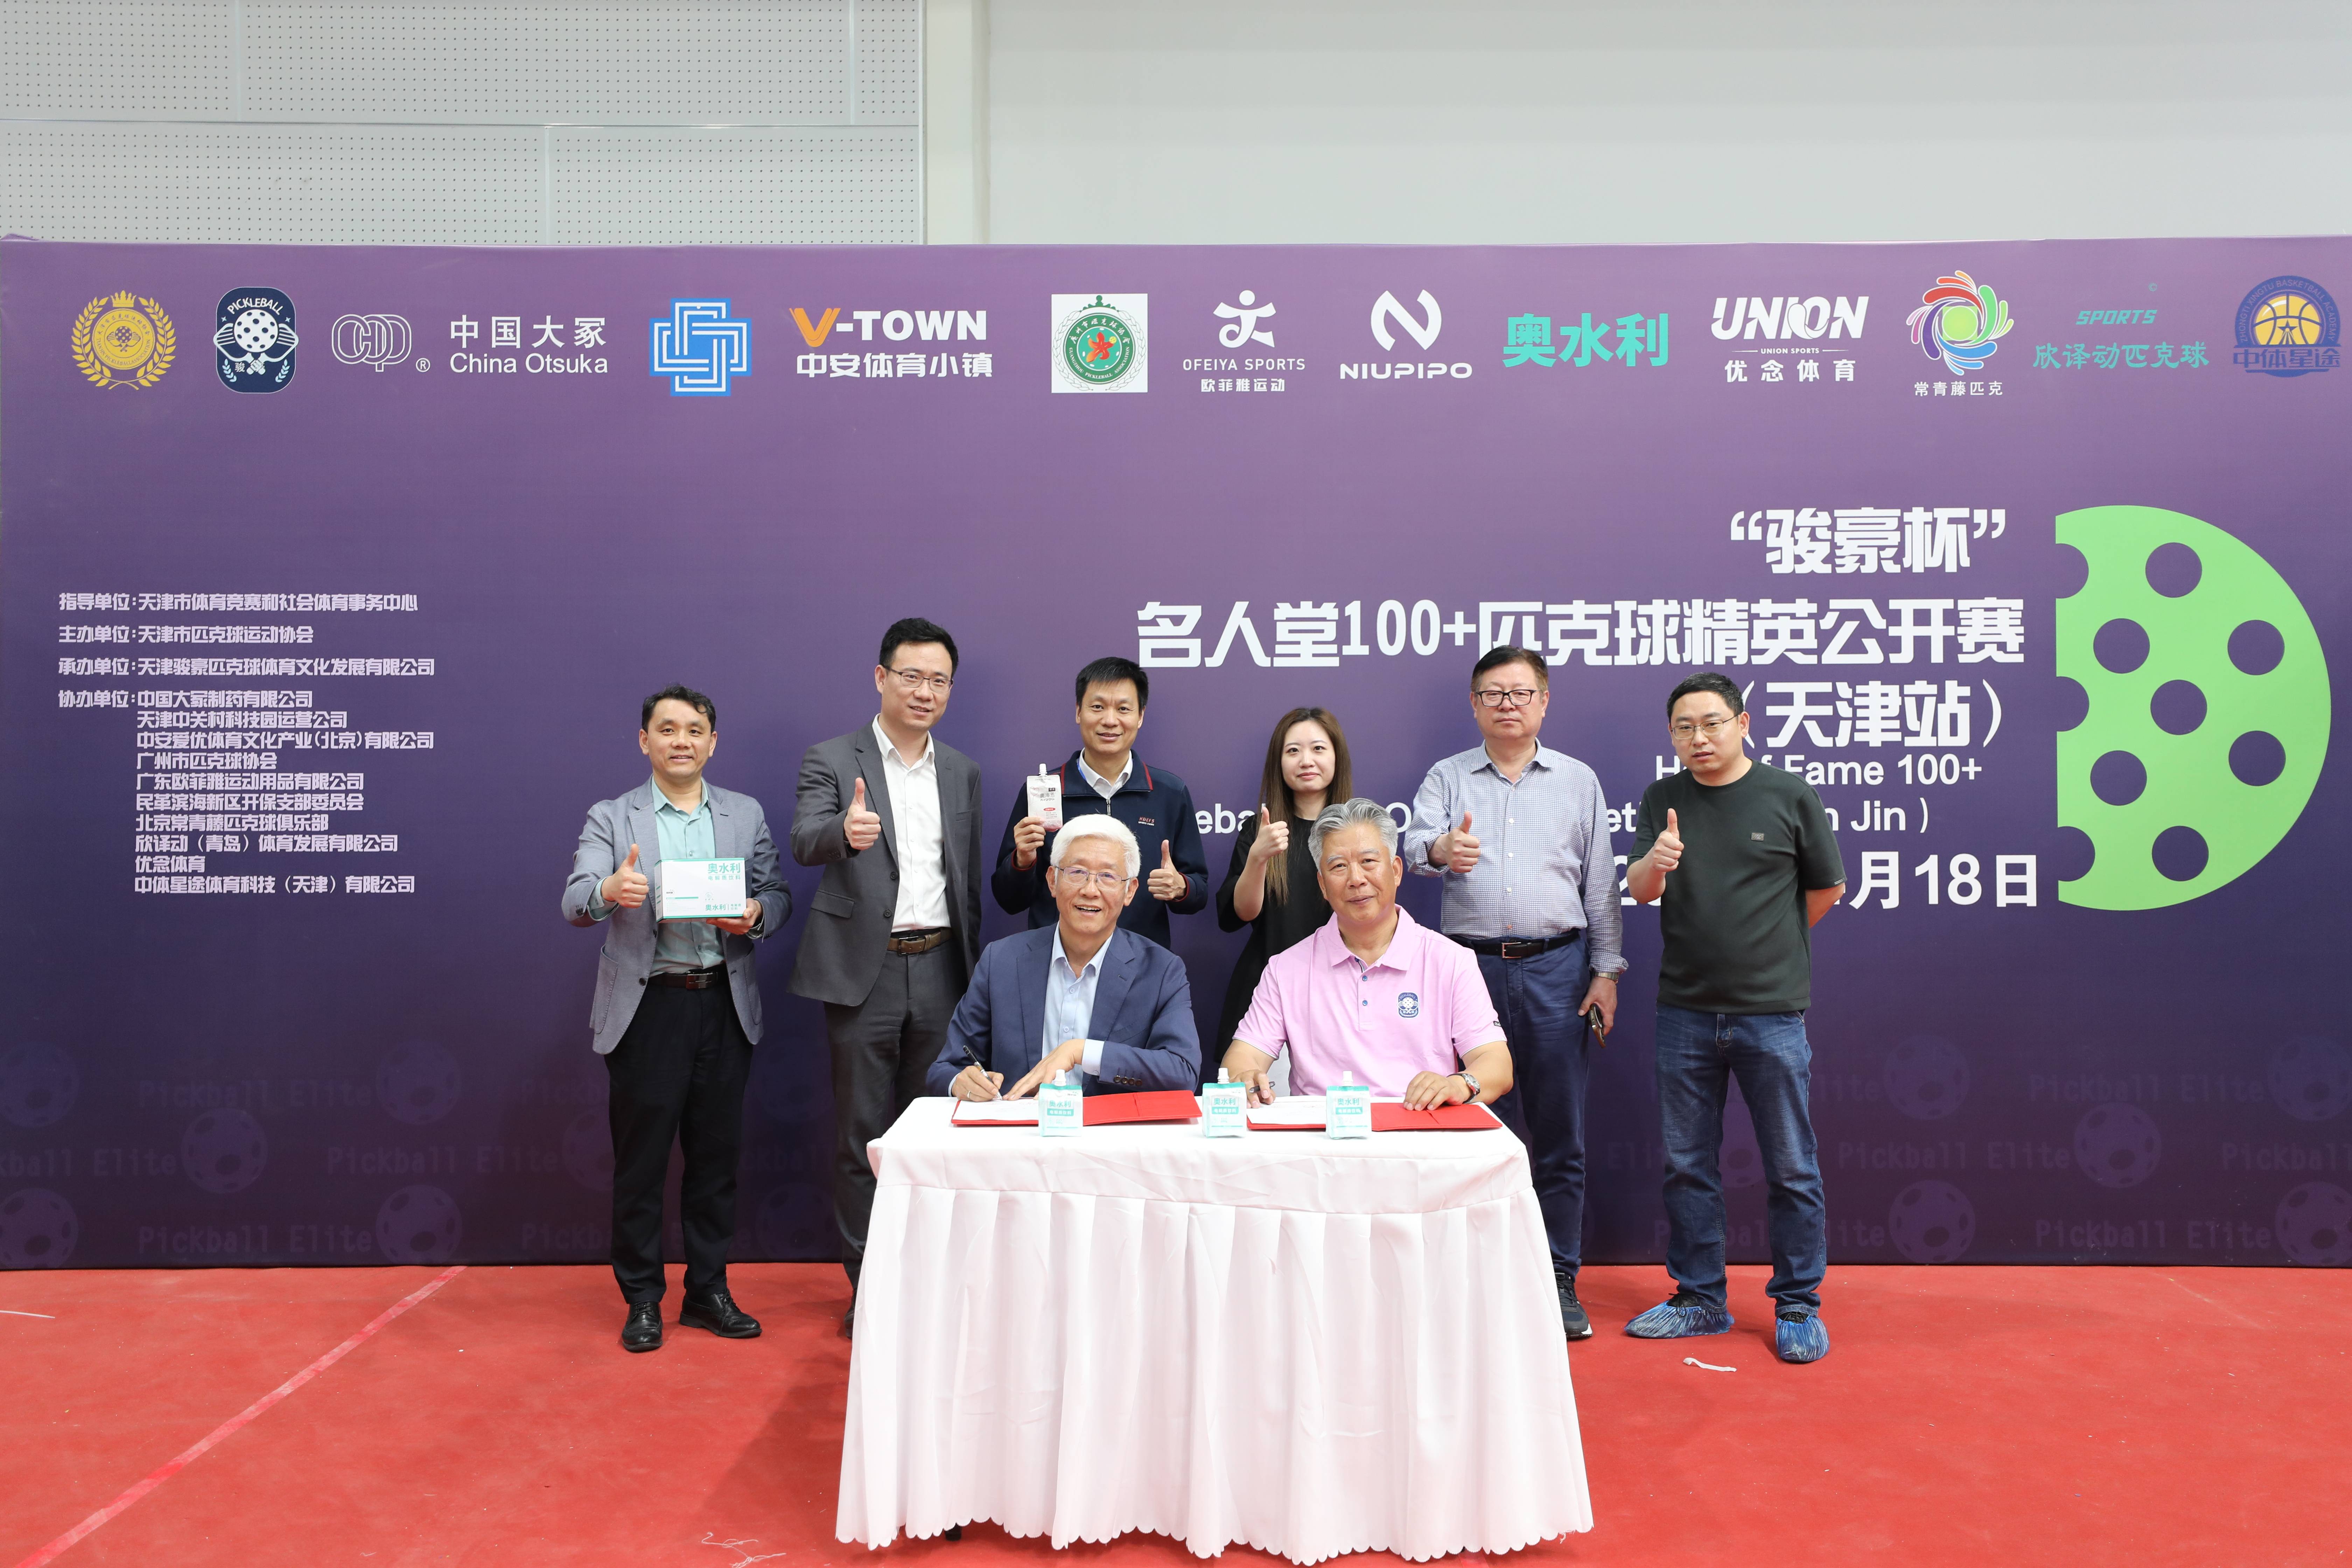 中国大冢与天津市匹克球运动协会签署战略合作协议